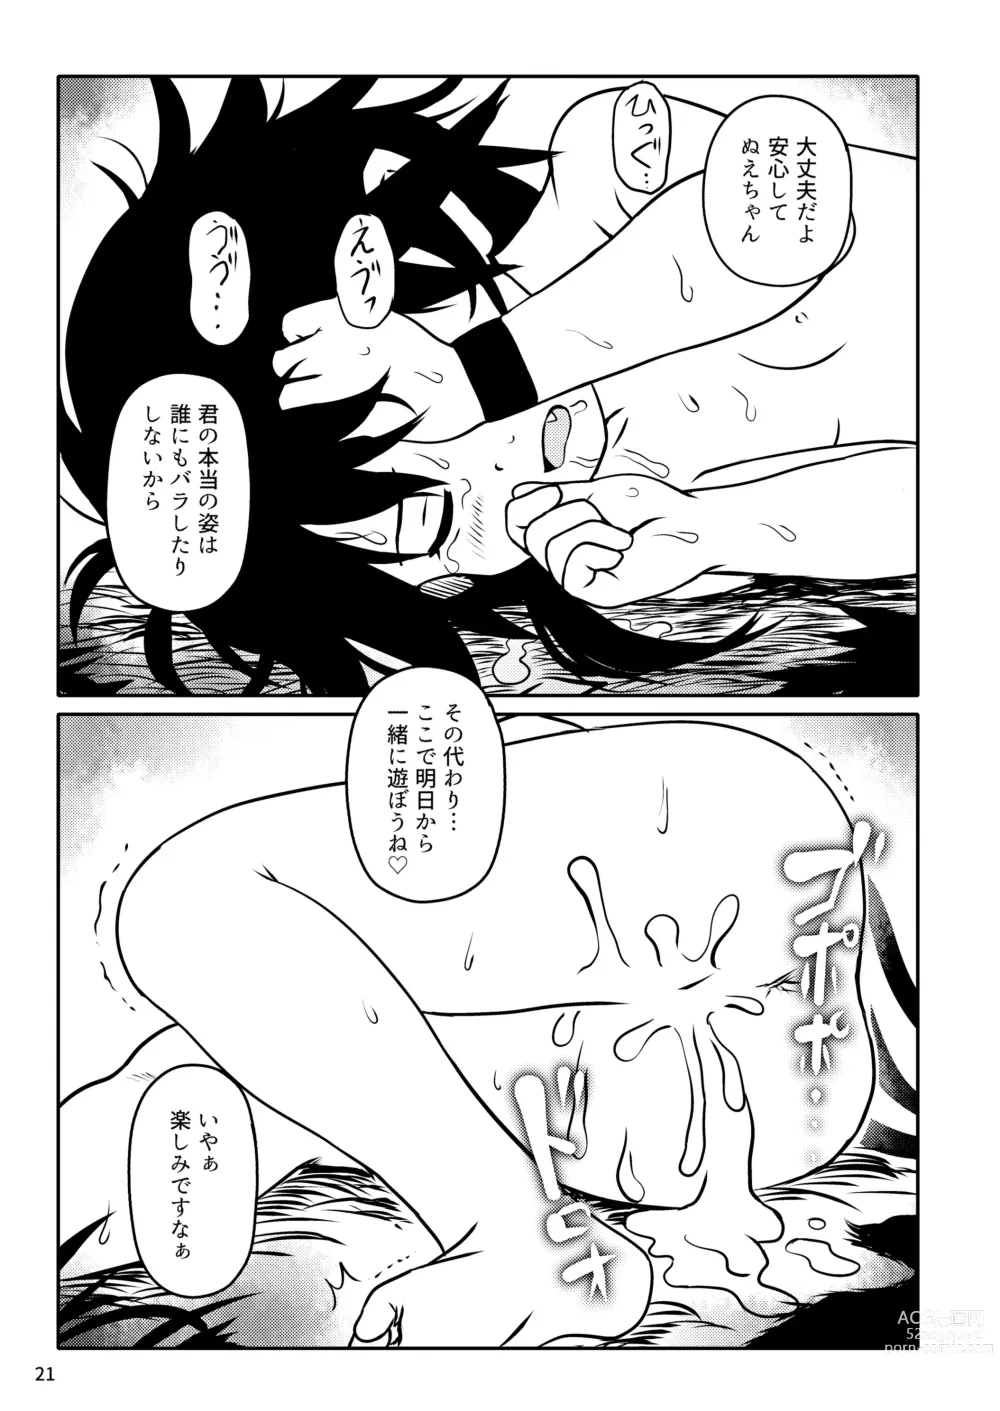 Page 21 of doujinshi Trauma! Nue-chan!